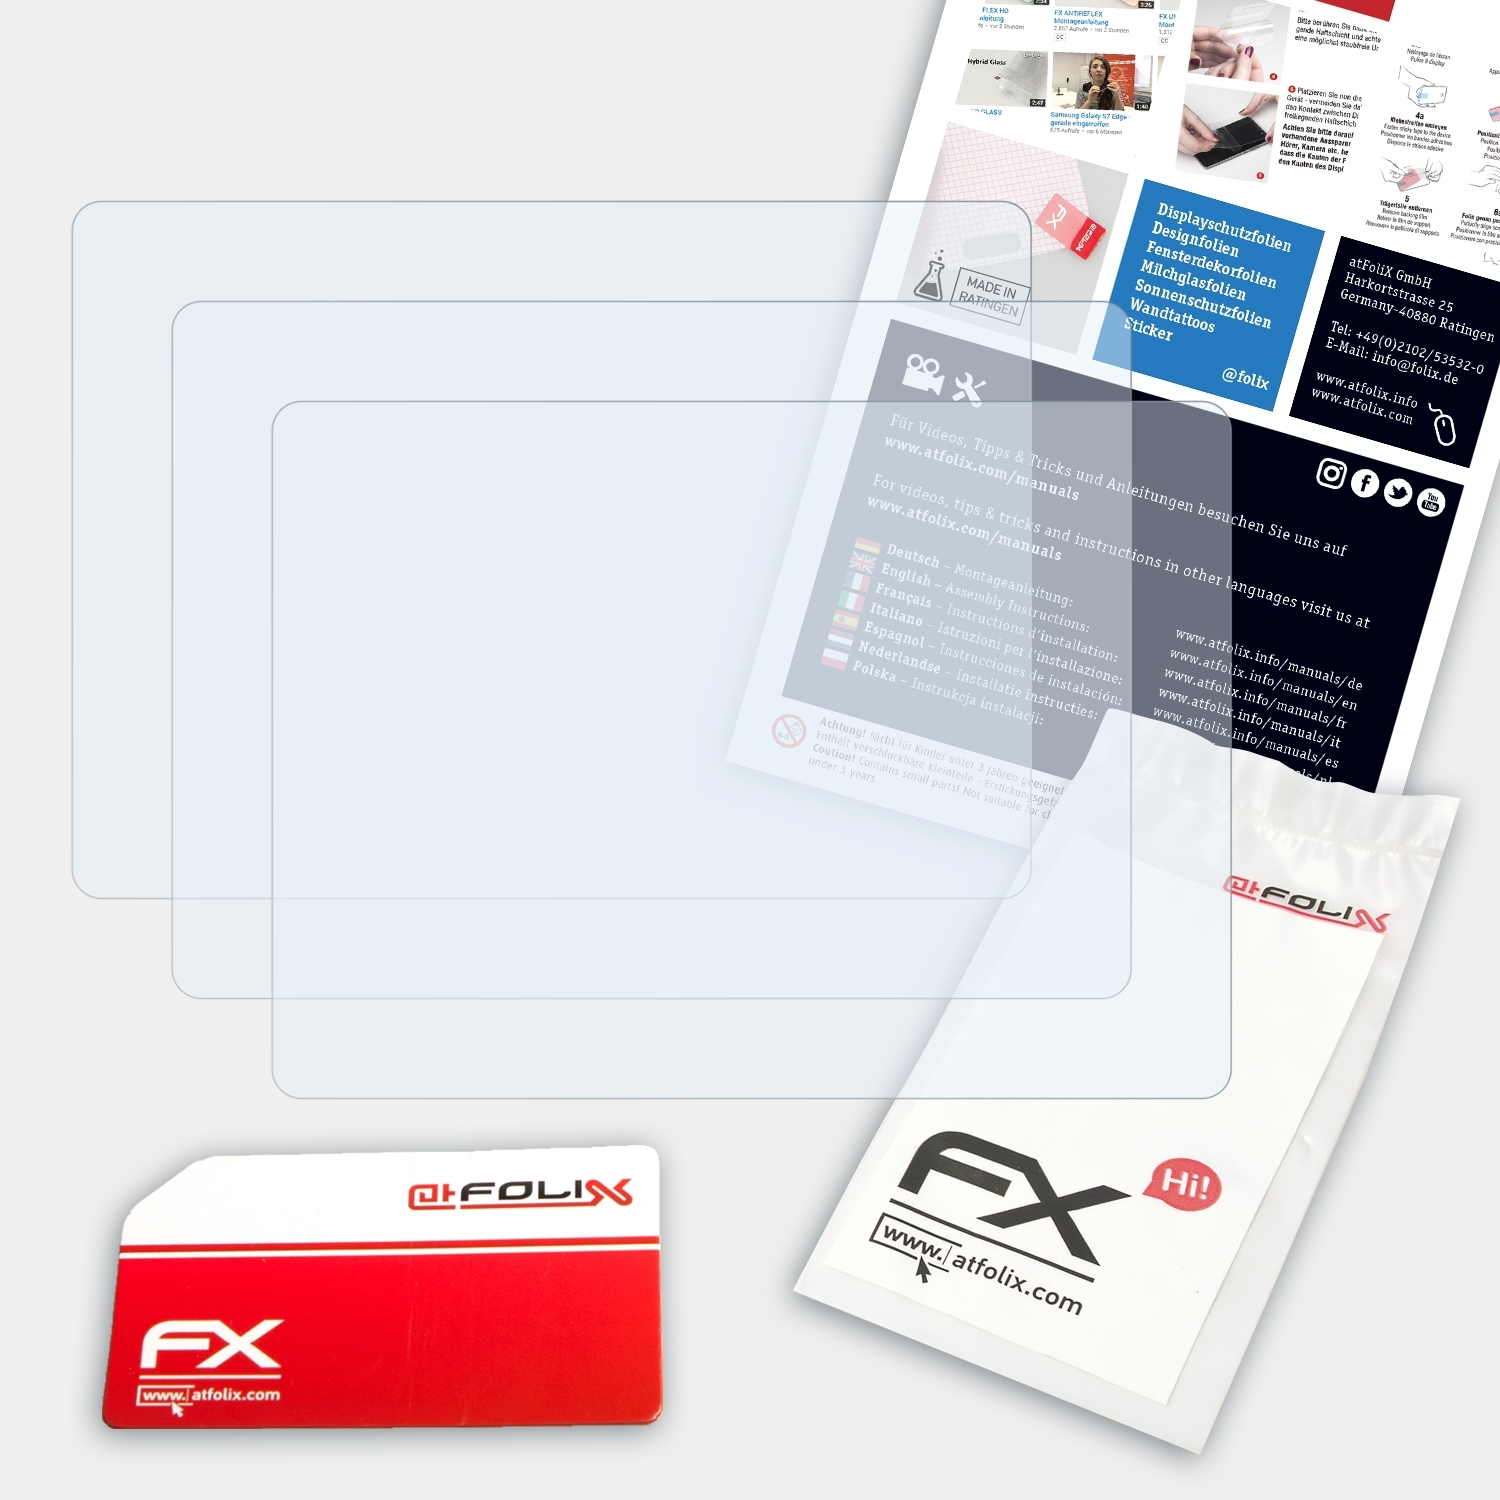 FX-Clear Displayschutz(für ATFOLIX Lumix Panasonic DMC-TZ3) 3x